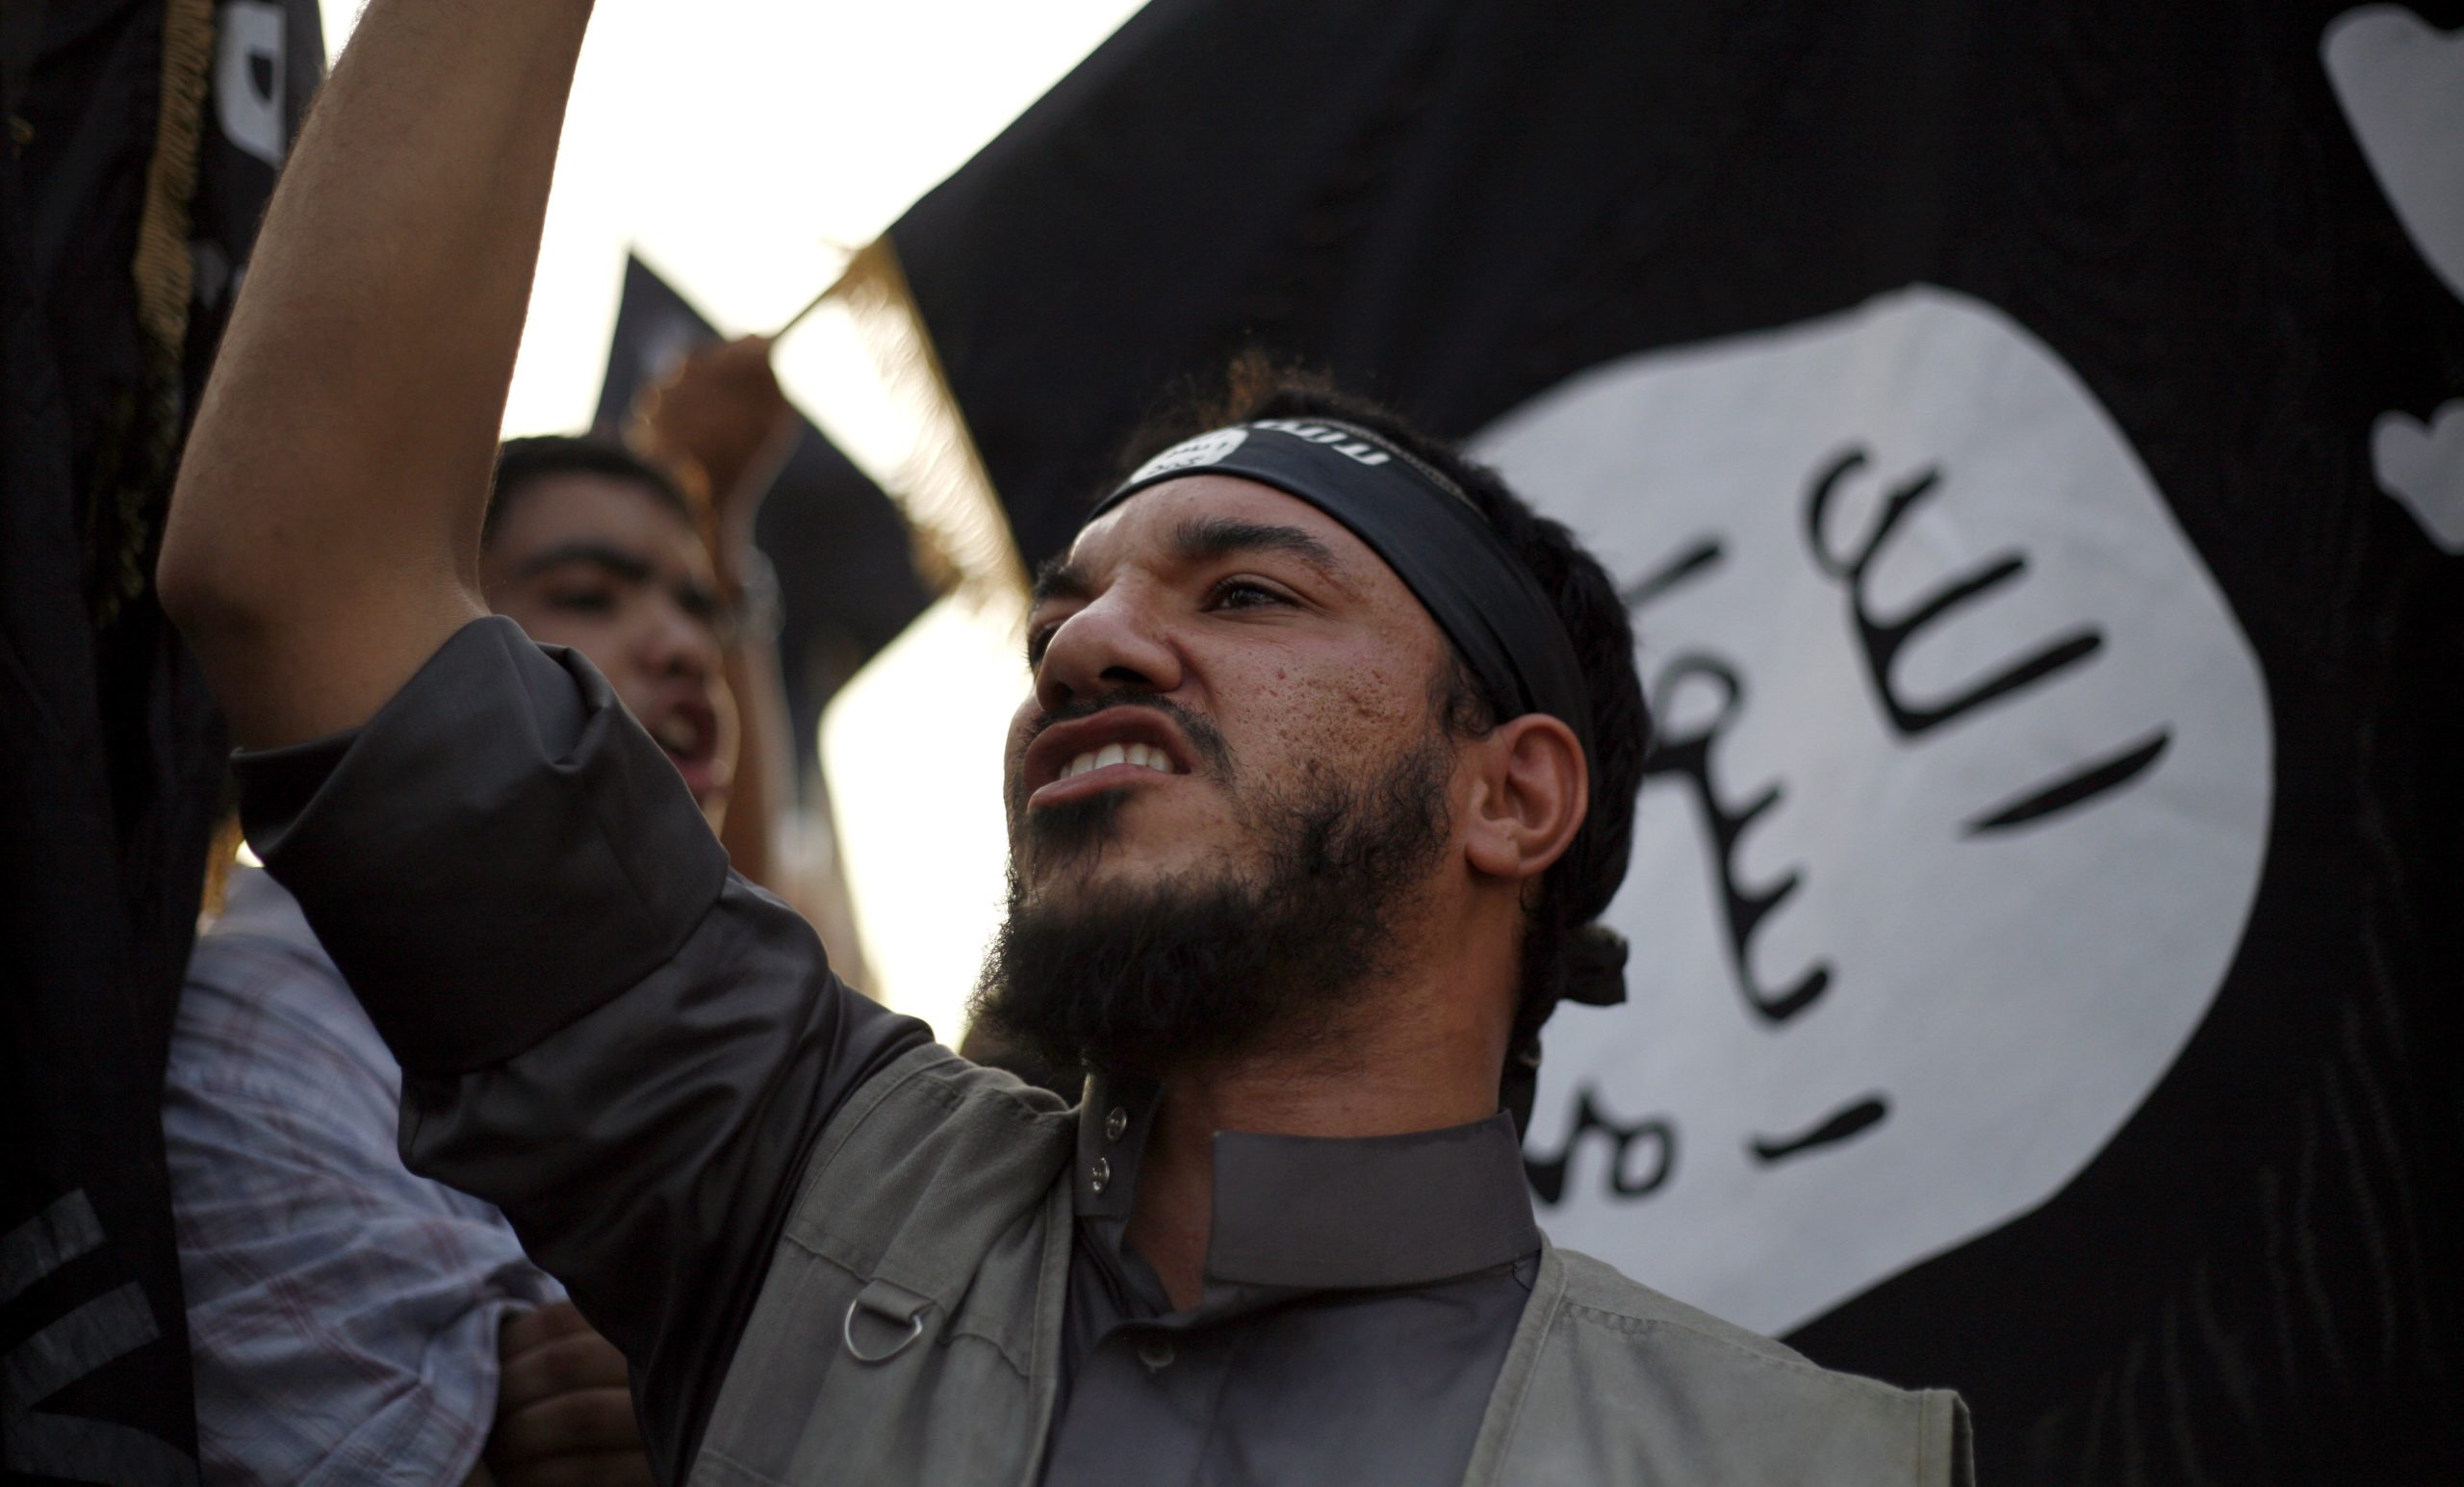 Επικίνδυνος ισλαμιστής στέλεχος του ISIS συνελήφθη στην Αλεξανδρούπολη! – Πόσοι «κρύβονται» στα  «hotspot»; (φωτό) (upd)